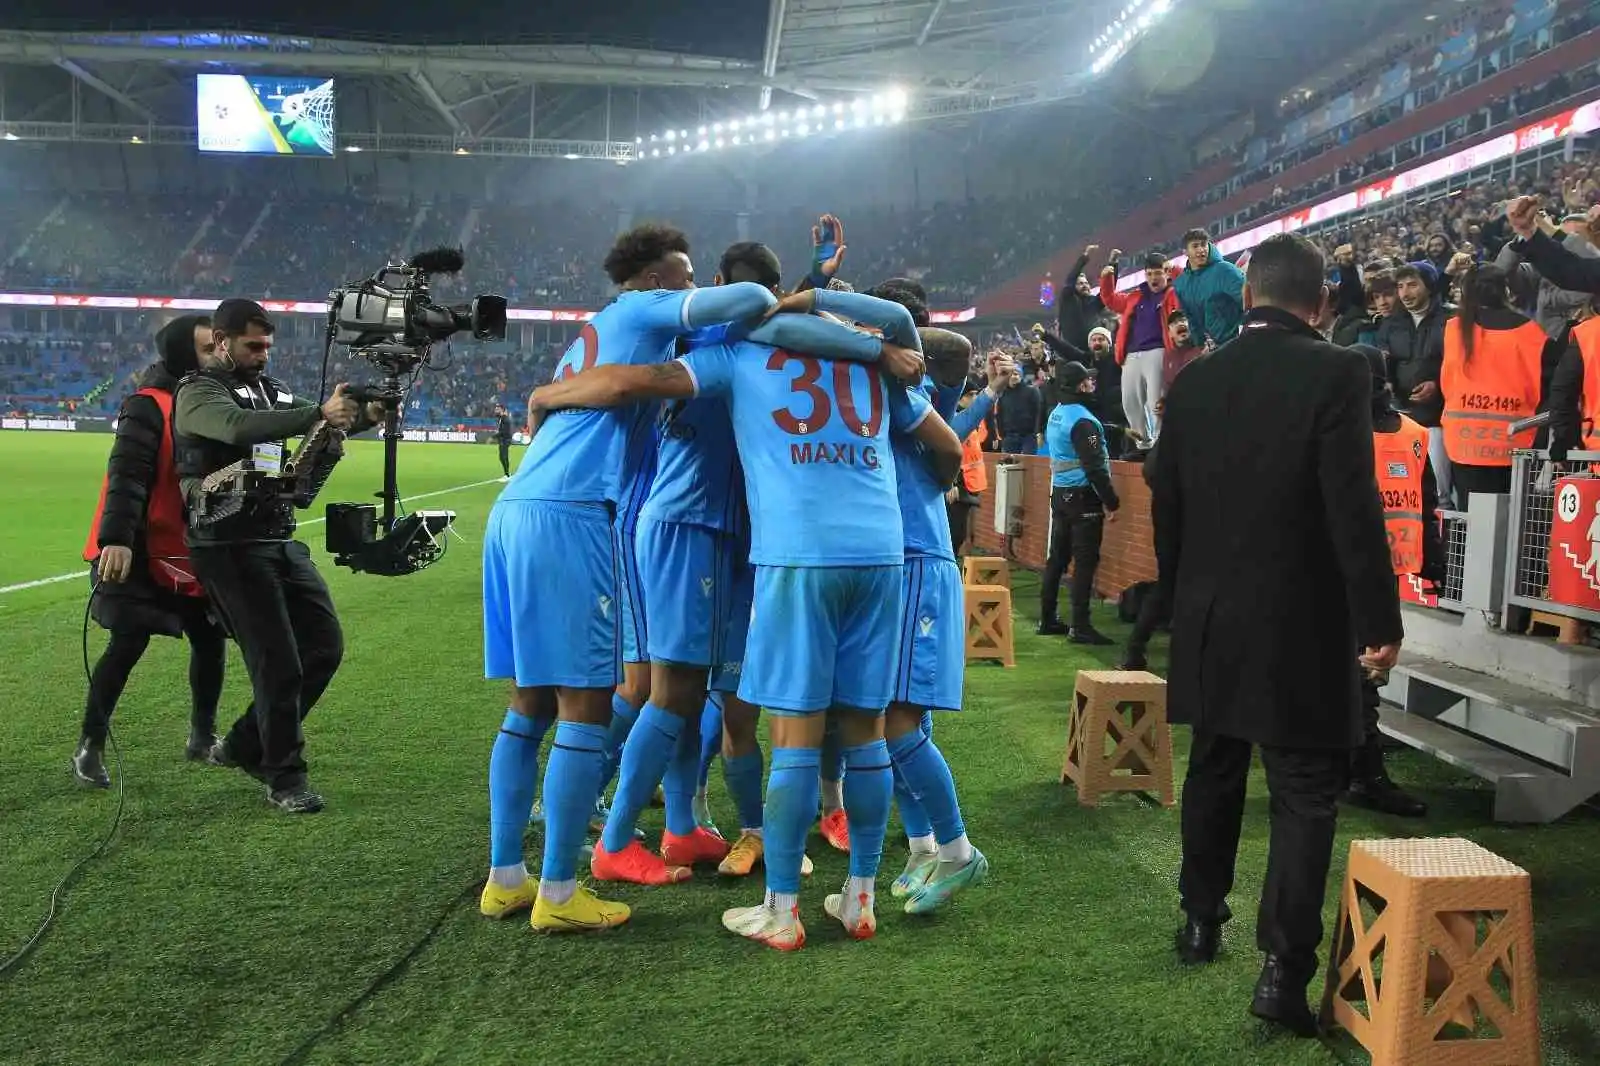 Spor Toto Süper Lig: Trabzonspor: 3 - Giresunspor: 0 (Maç sonucu)
